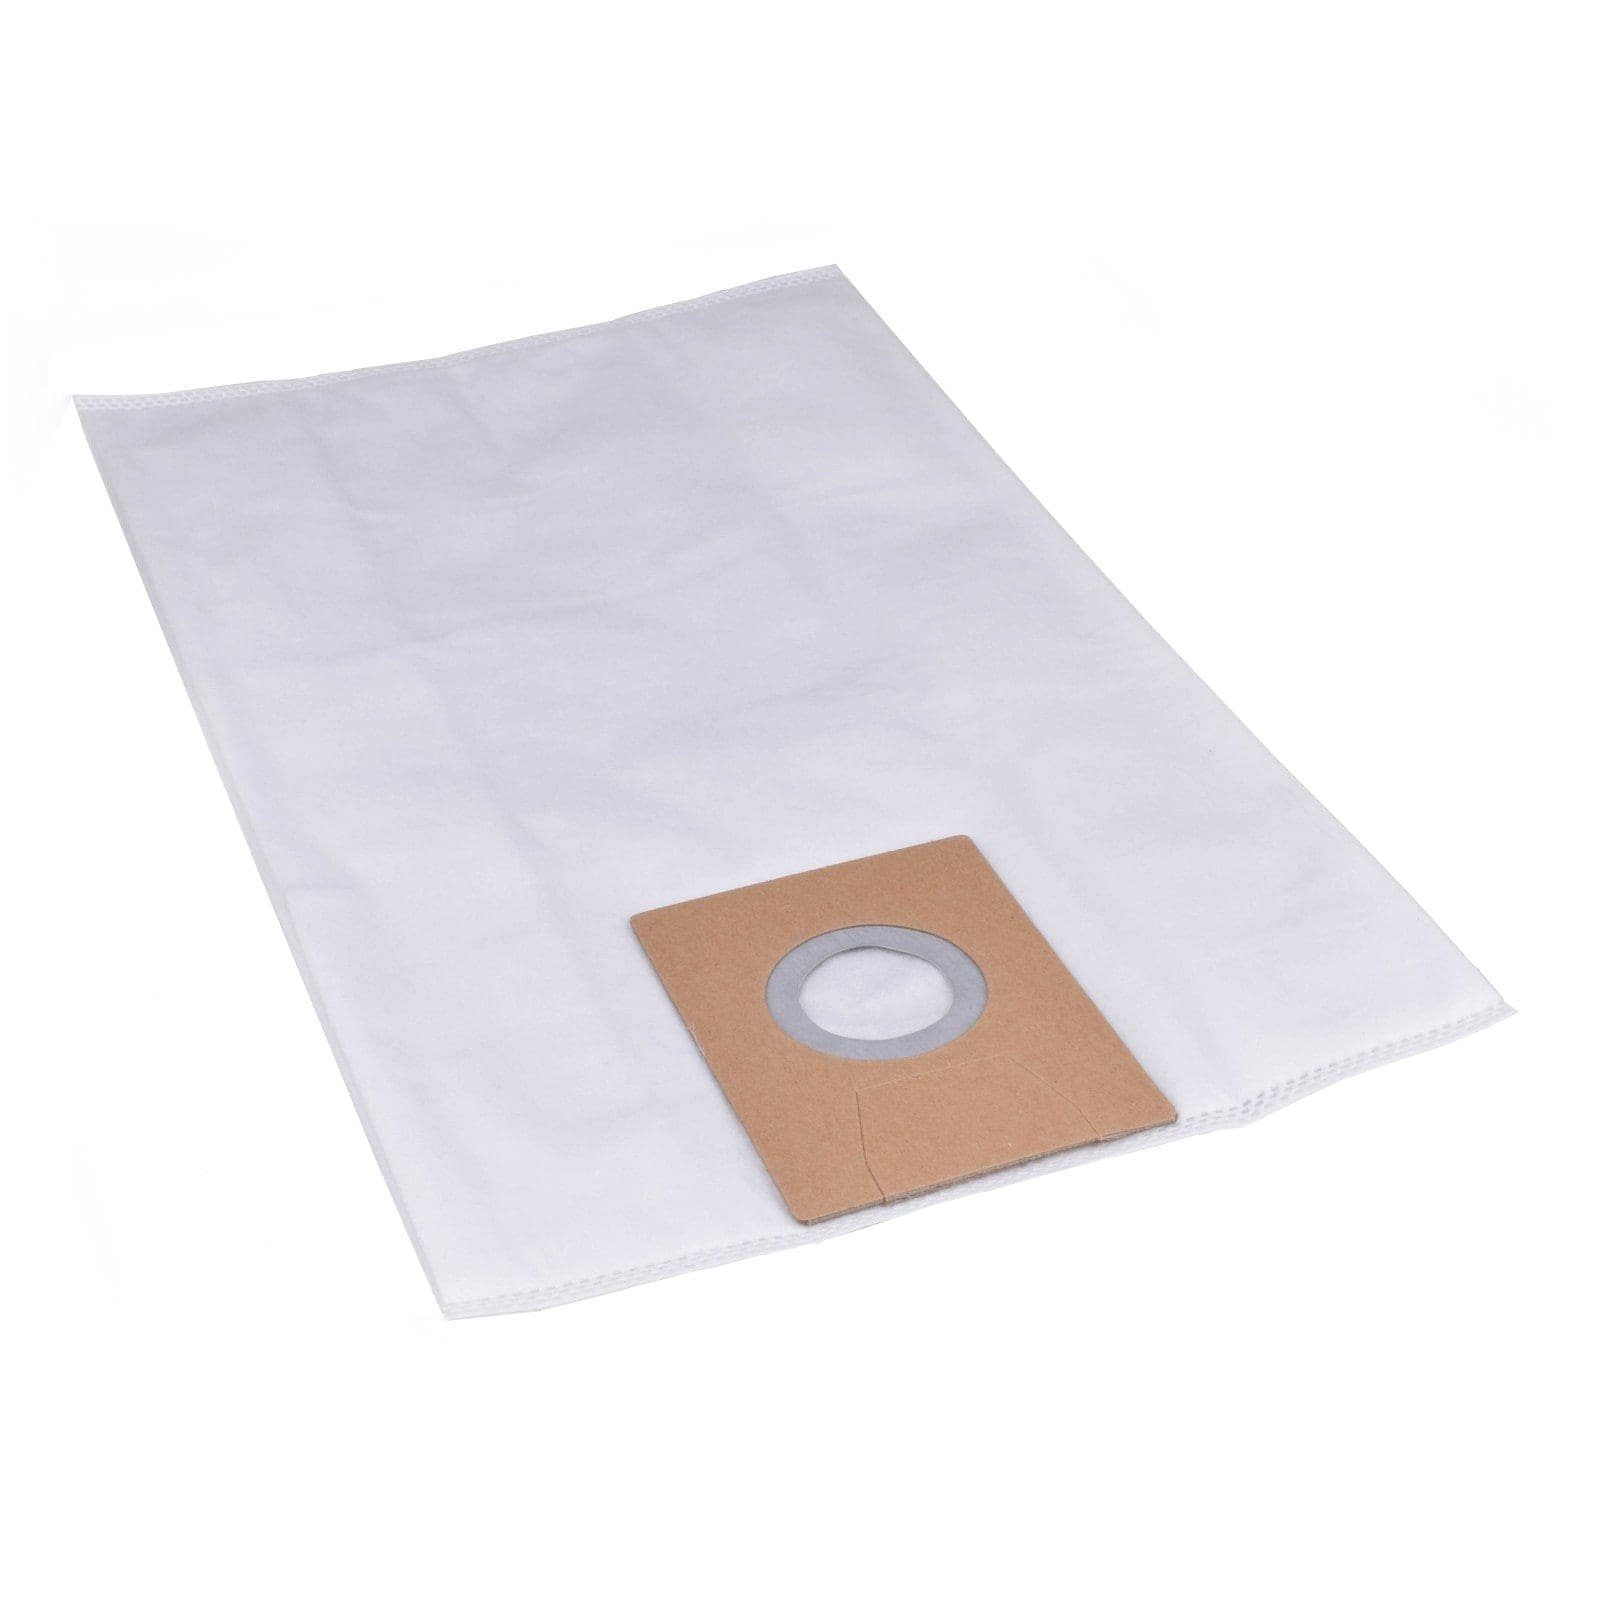 Reinica Staubsaugerbeutel passend für Clean a la Card K103200941, 10er-Pack Staubbeutel Saugerbeutel Beutel Filtertüten